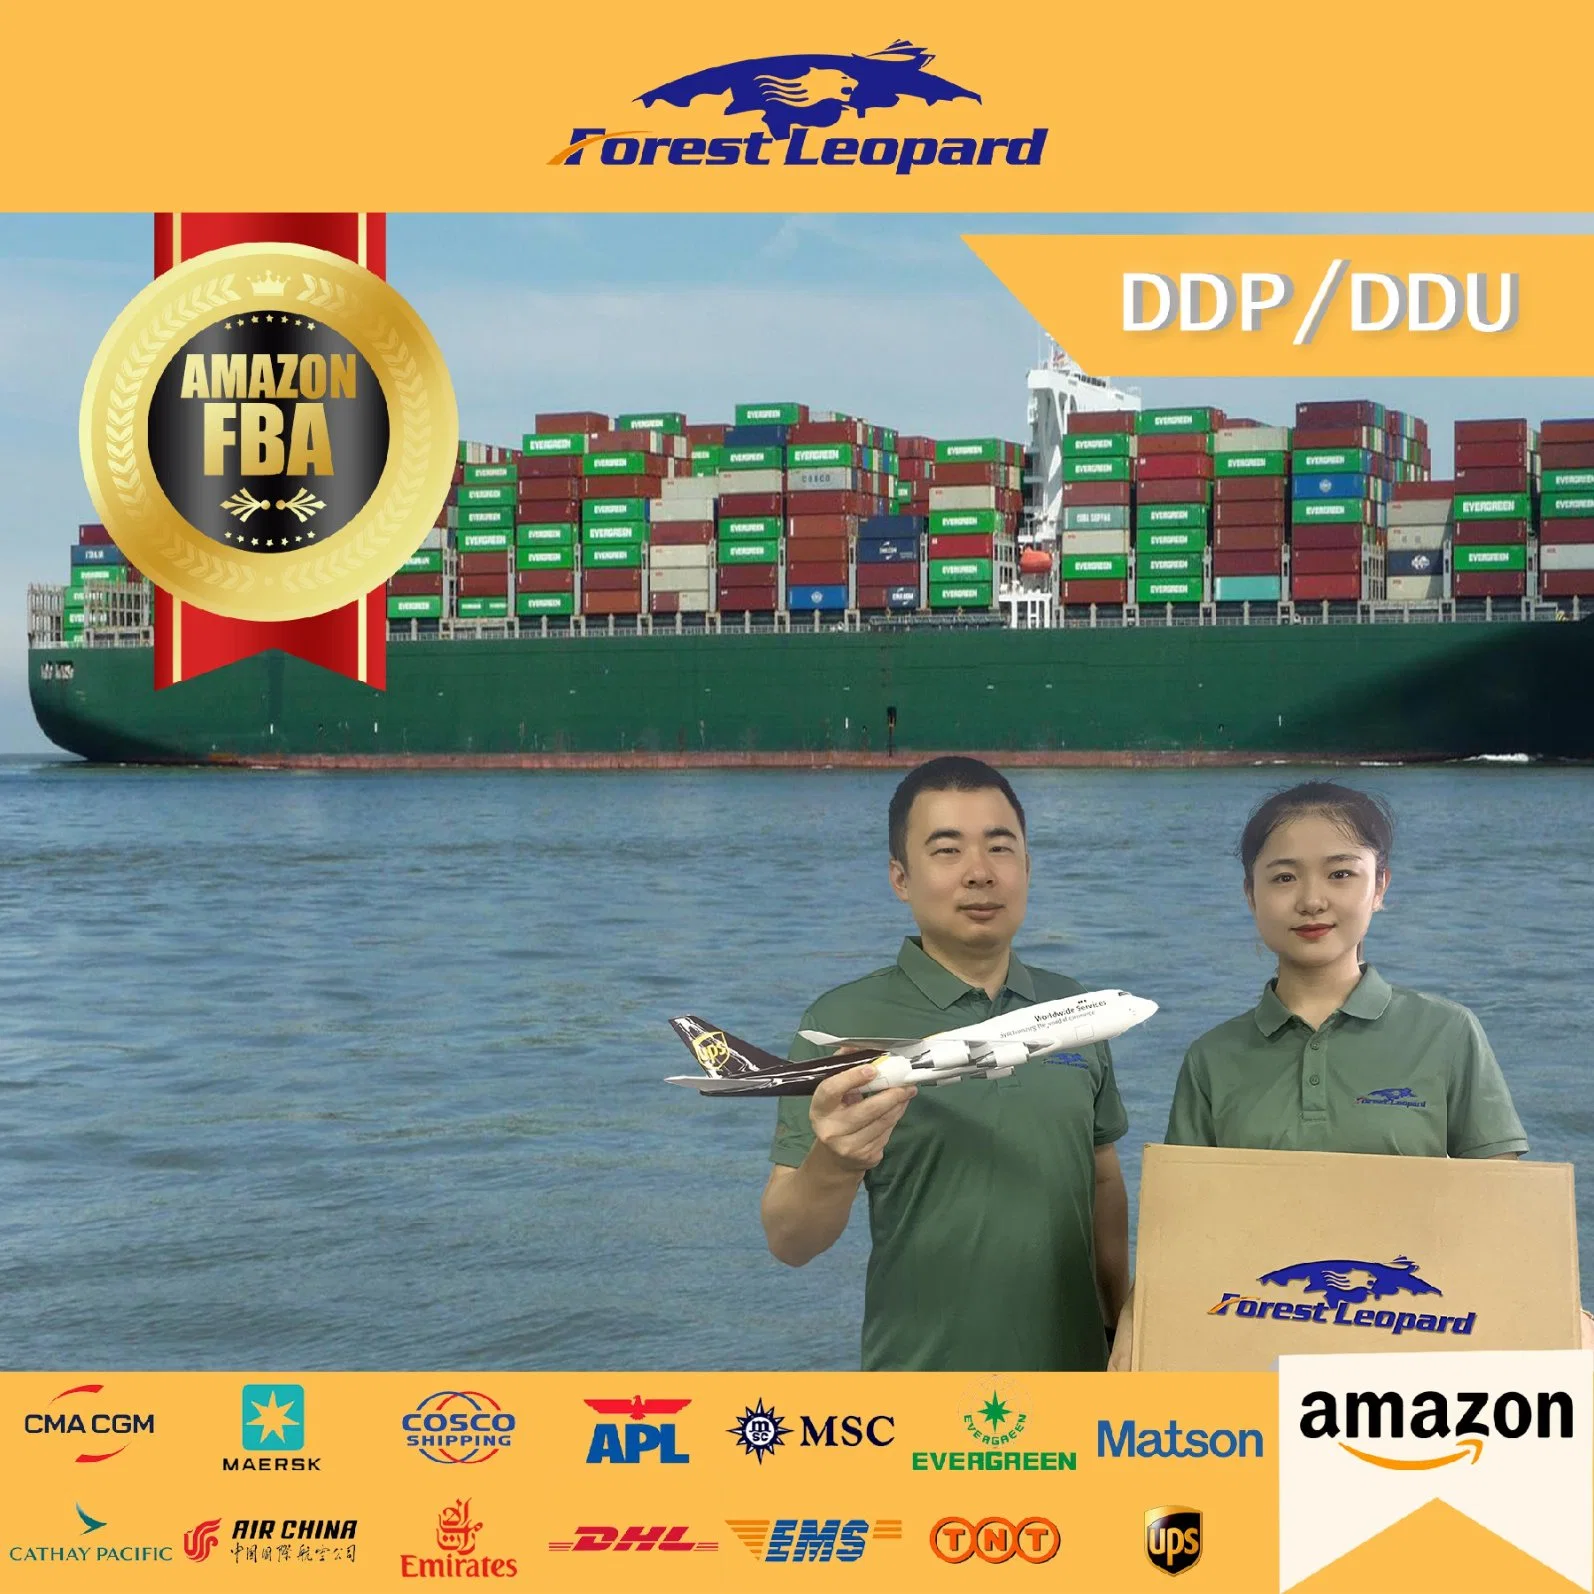 Mar profesional Frorwarder Air Freight Forwarding el envío de las empresas de transporte agente de transporte de mercancías de China los gastos de transporte